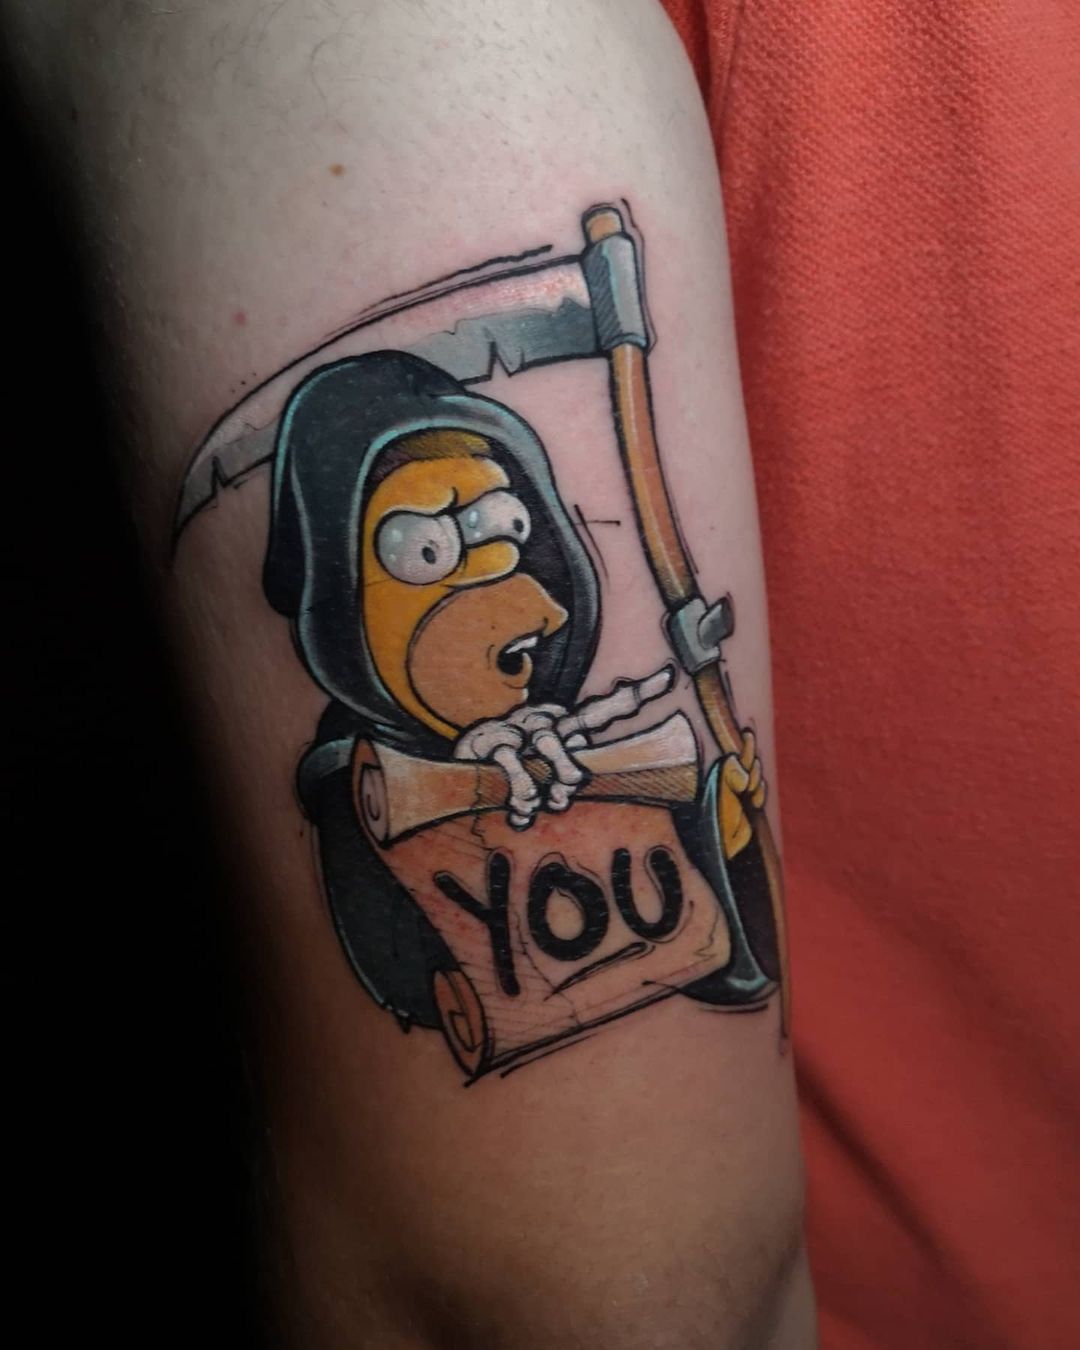 Татуировка Симпсоны - лучшие идеи для оригинальной татуировки!